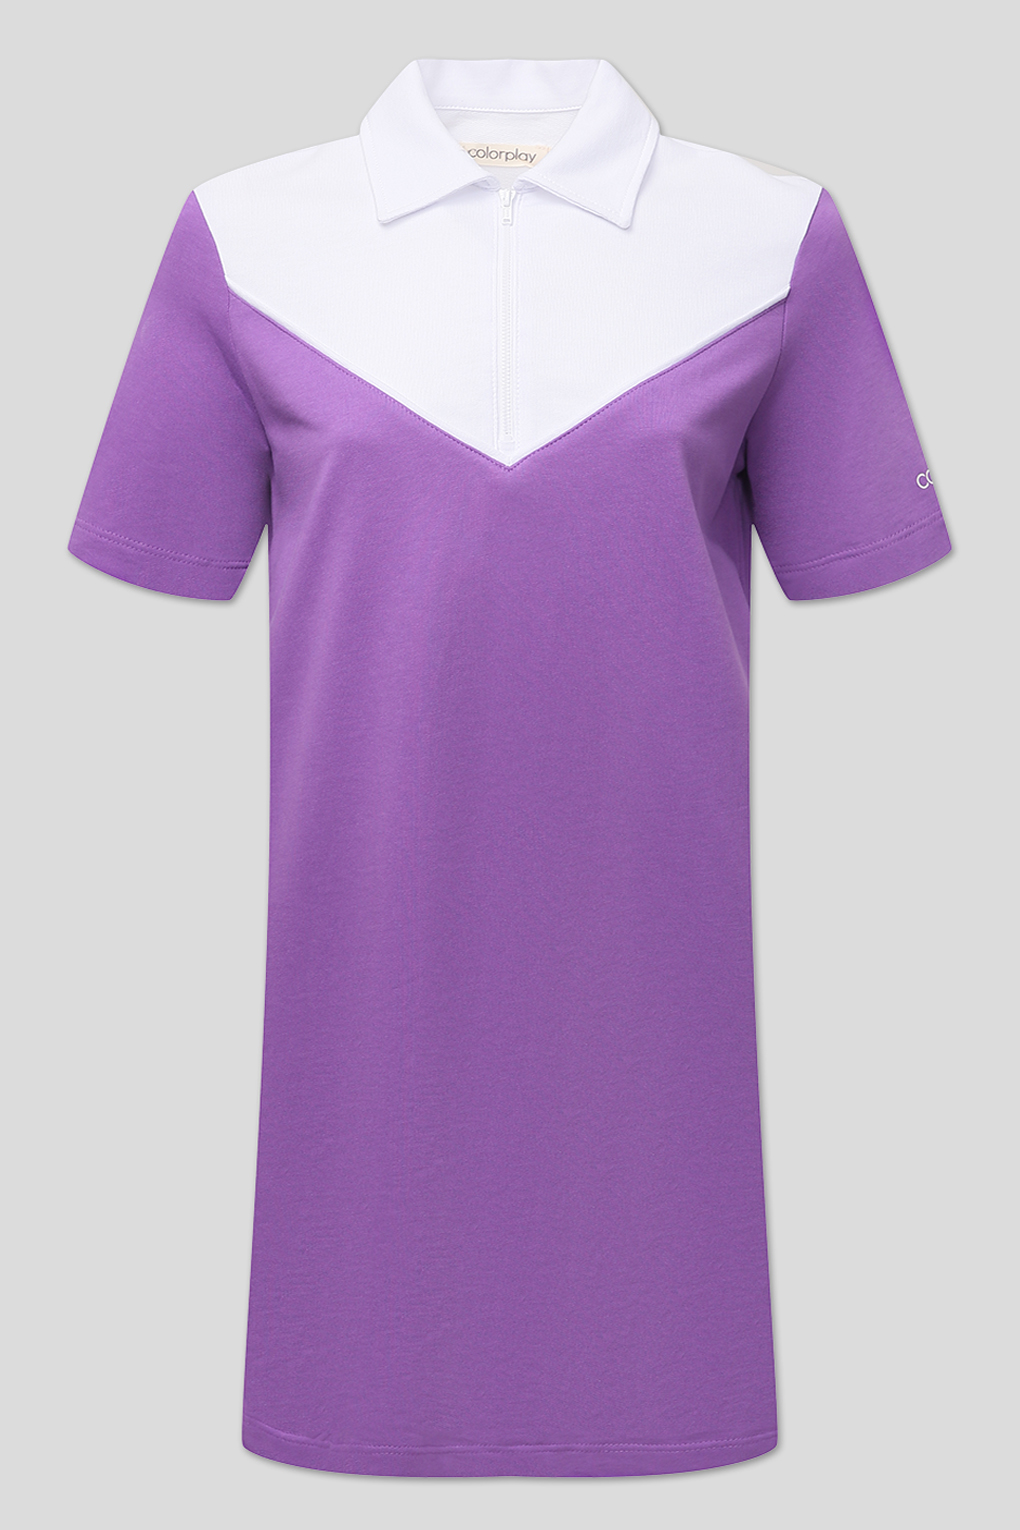 Платье женское COLORPLAY CP22045279-018 фиолетовое XS